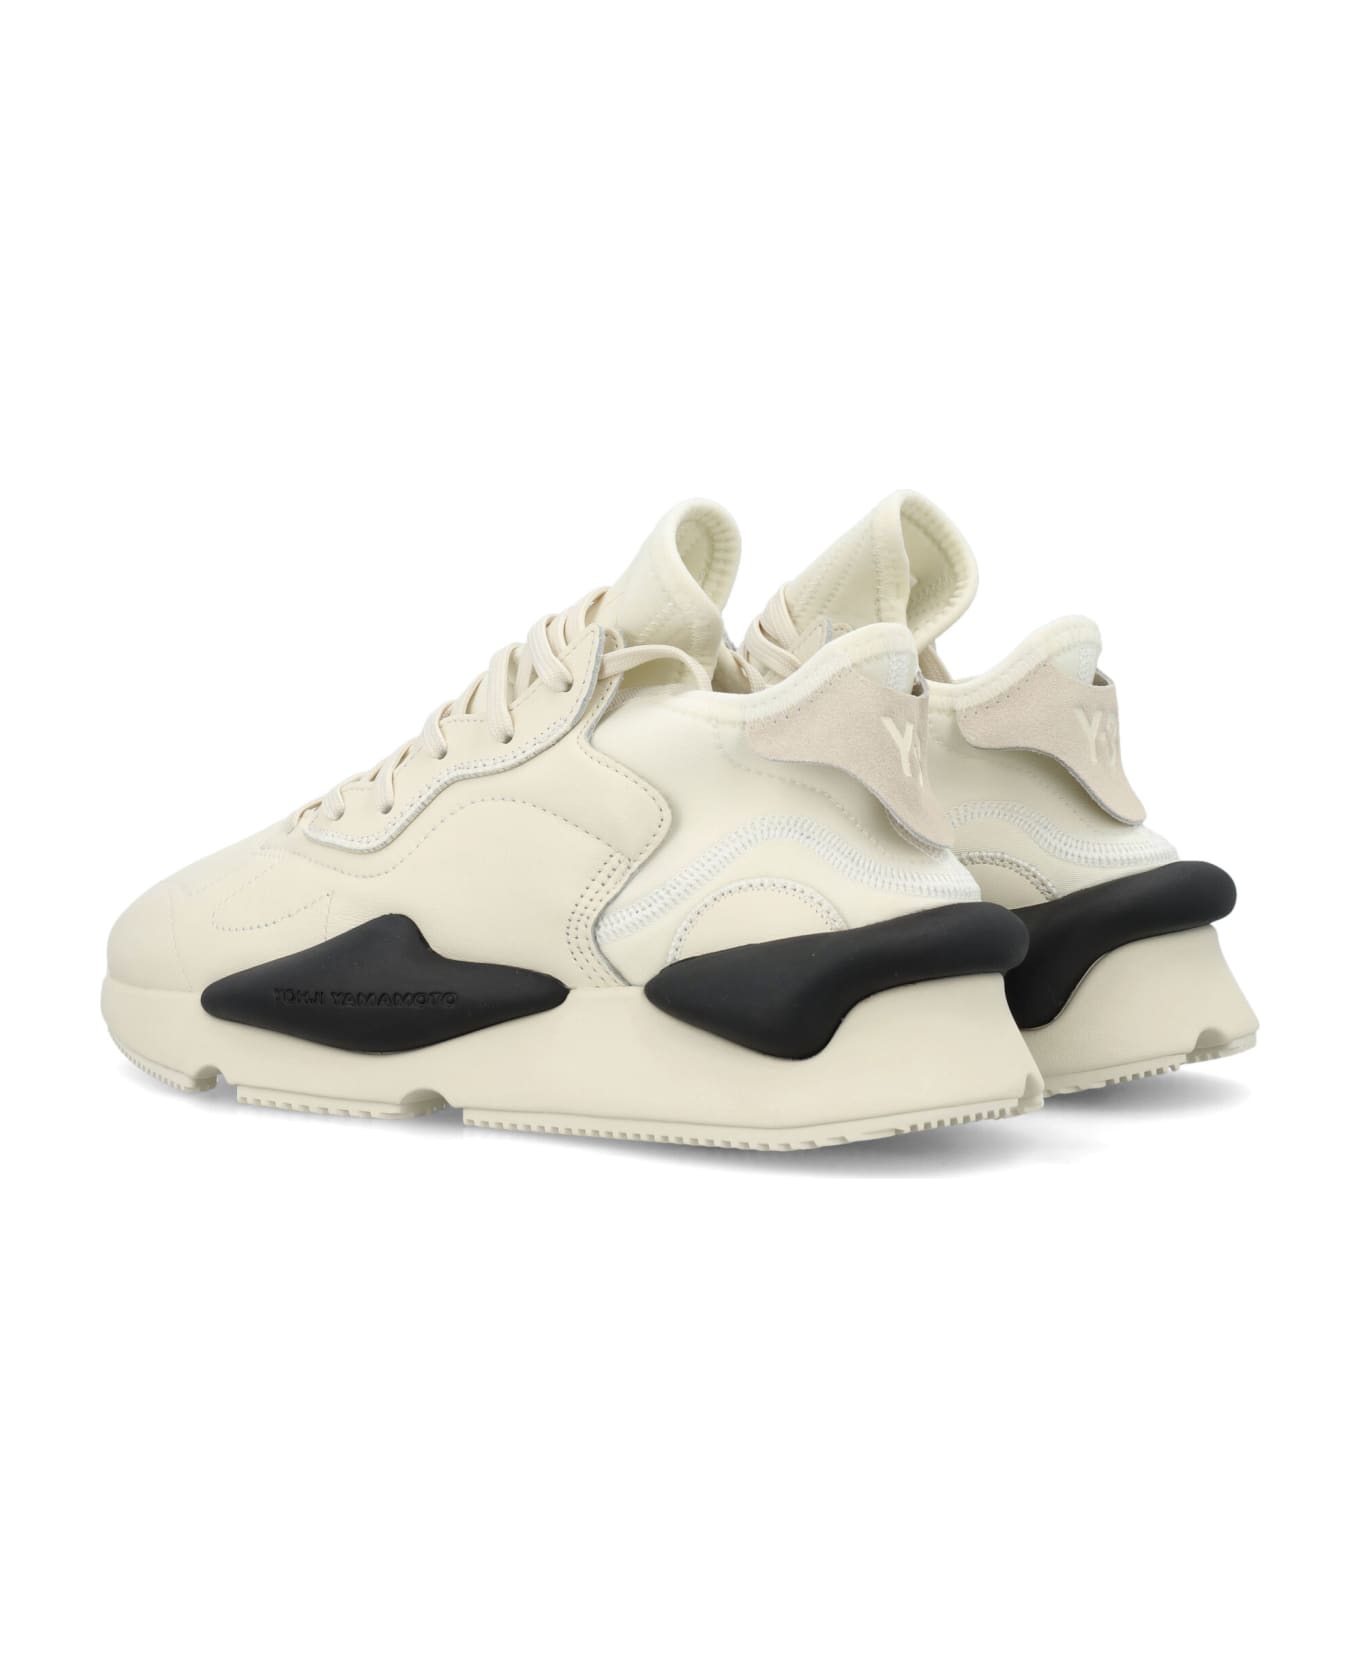 Y-3 Kaiwa Sneakers - WHITE